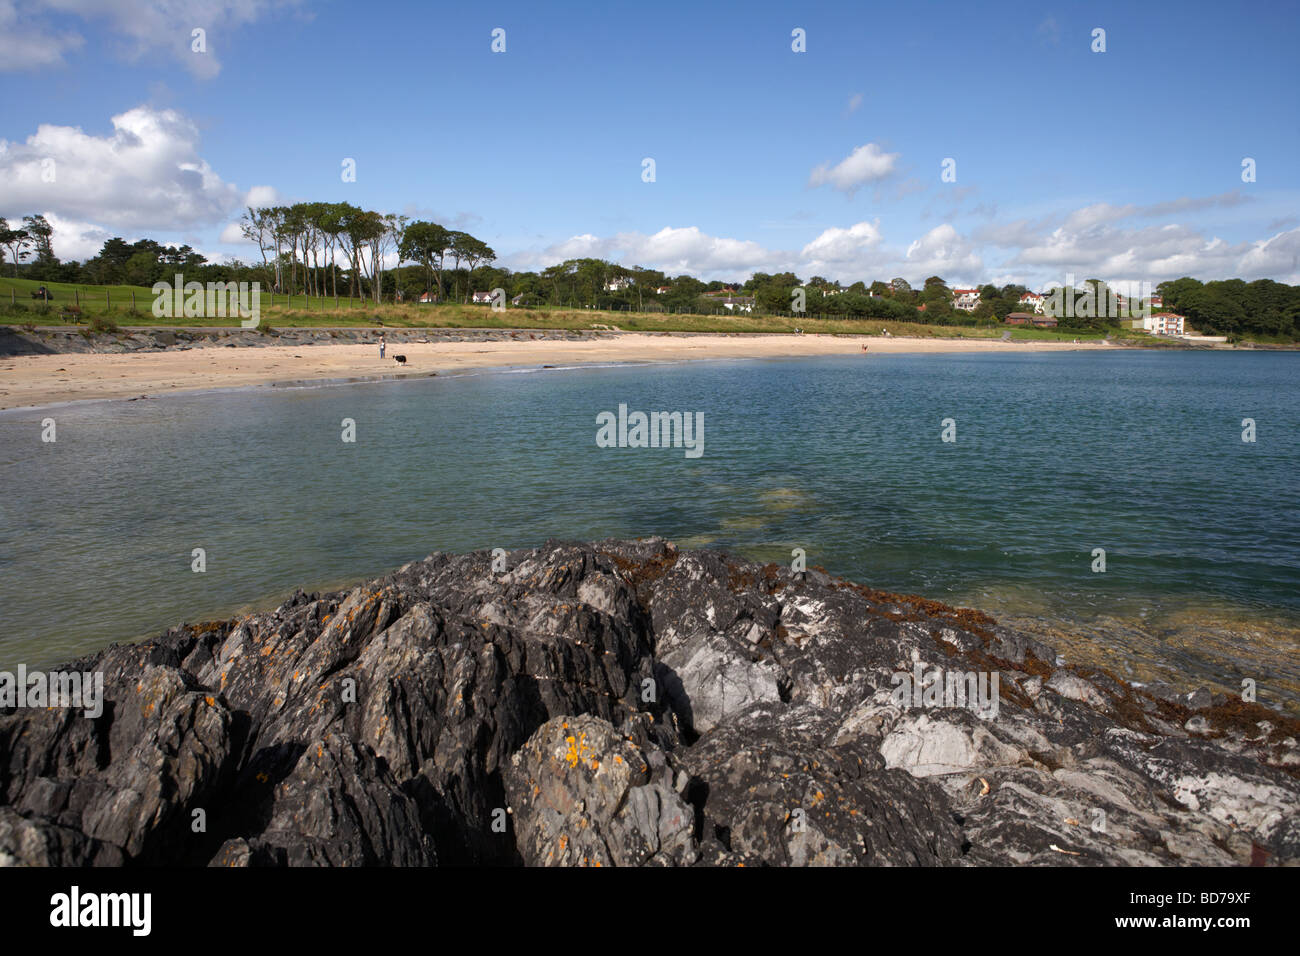 Helens Strandbucht jetzt Teil des Crawfordsburn Country Park in der Nordgrafschaft nach Nordirland Vereinigtes Königreich Stockfoto